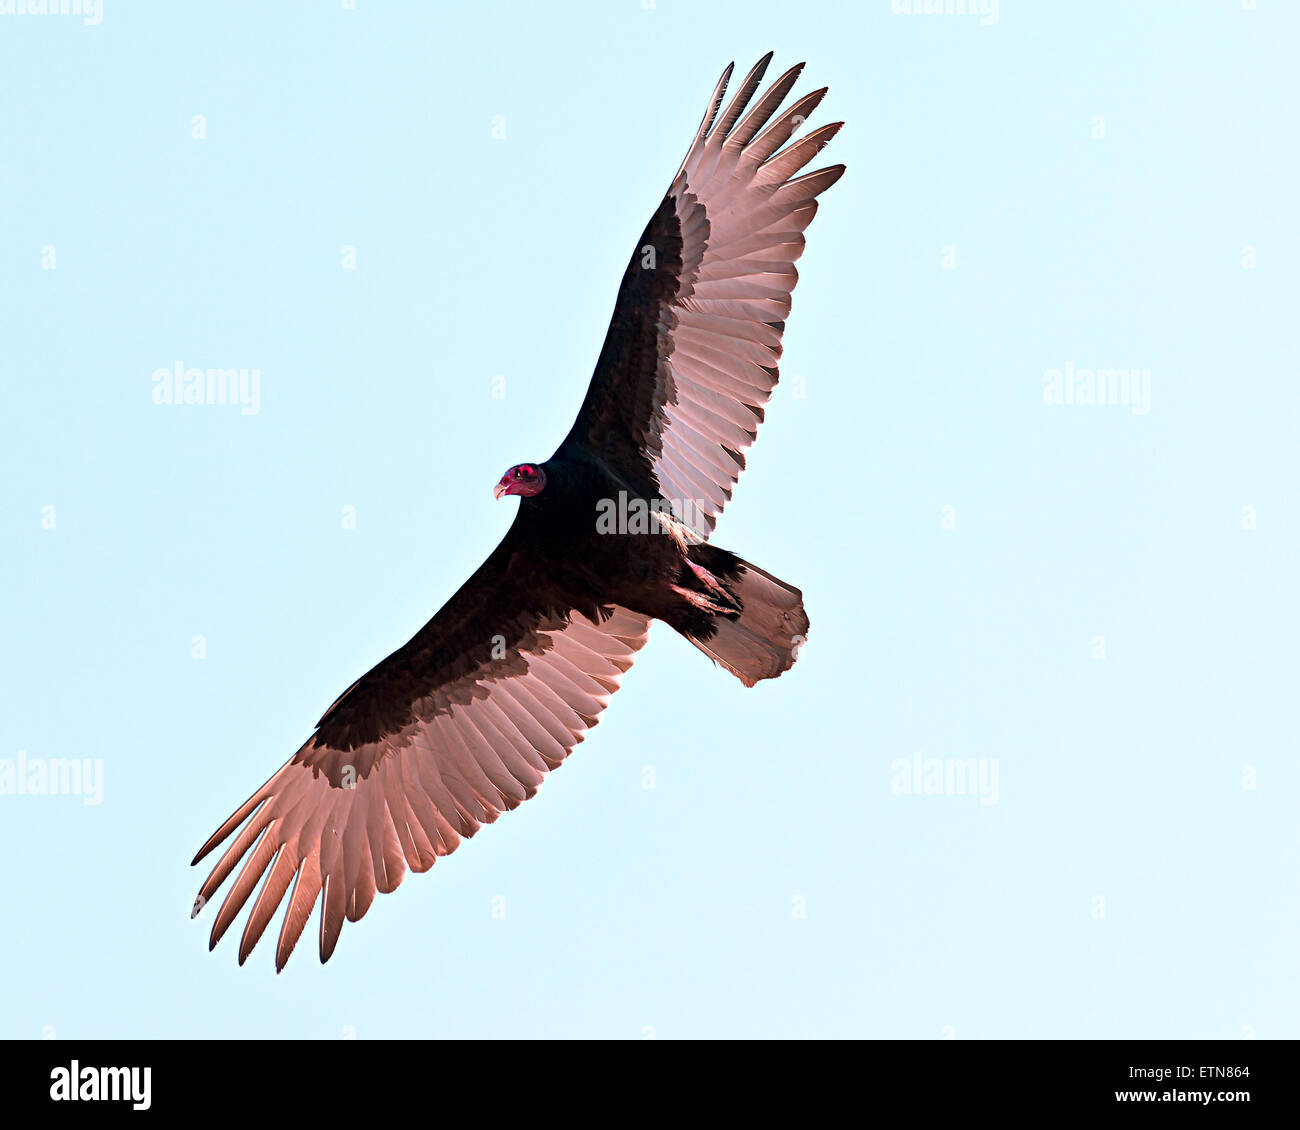 Basso angolo di visione di un avvoltoio la Turchia alla ricerca di cibo, Arizona, Stati Uniti d'America Foto Stock